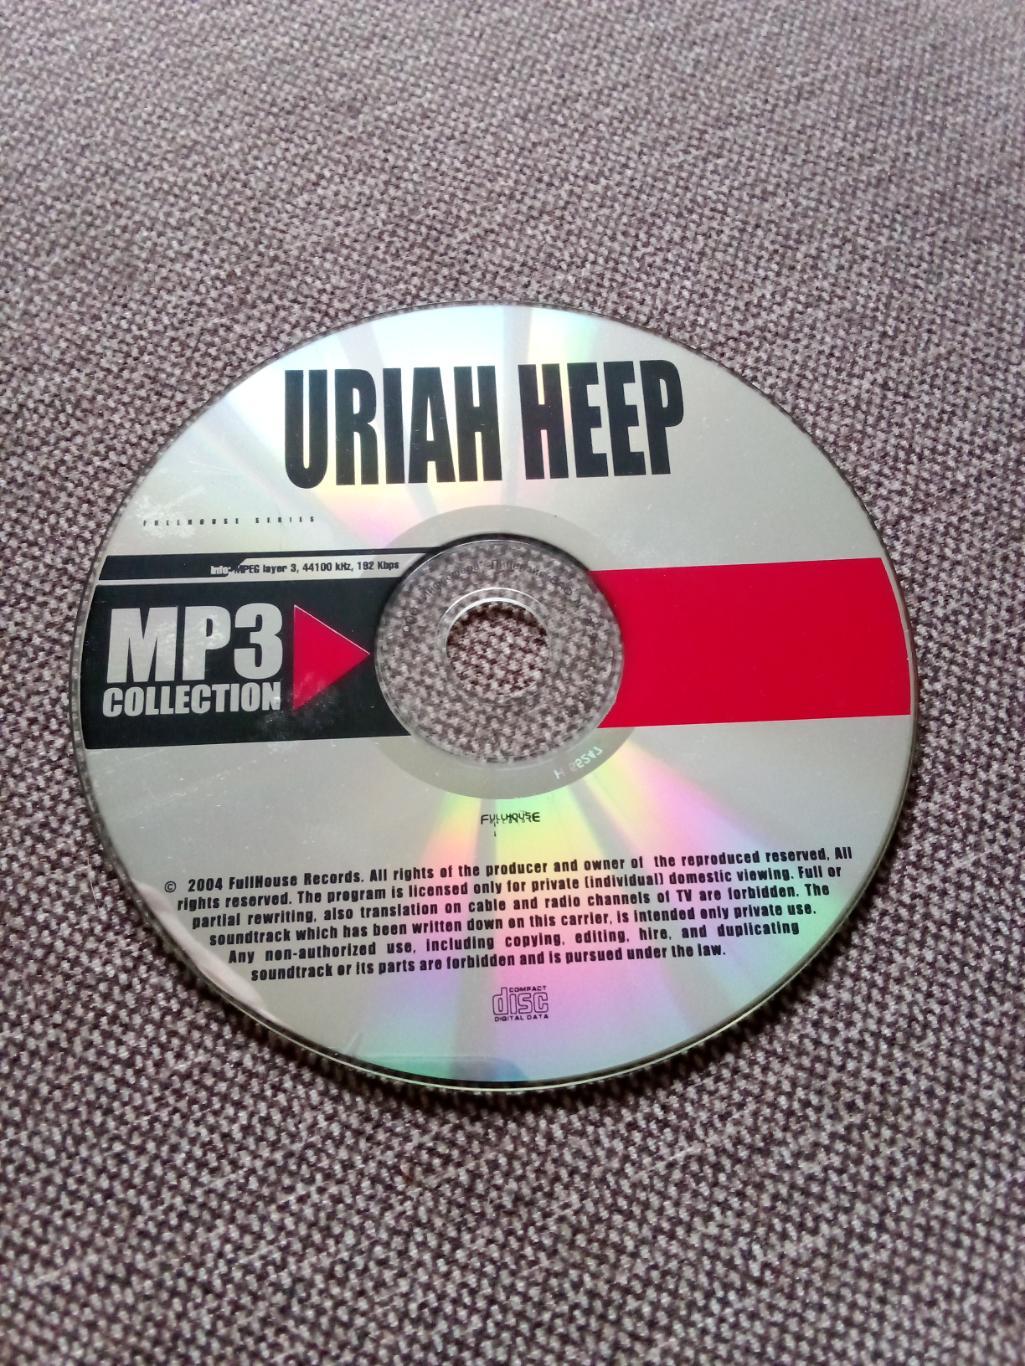 CD MP - 3 диск : группаUriah Heep1970 - 1982 гг. 14 альбомов (Рок-музыка) 4